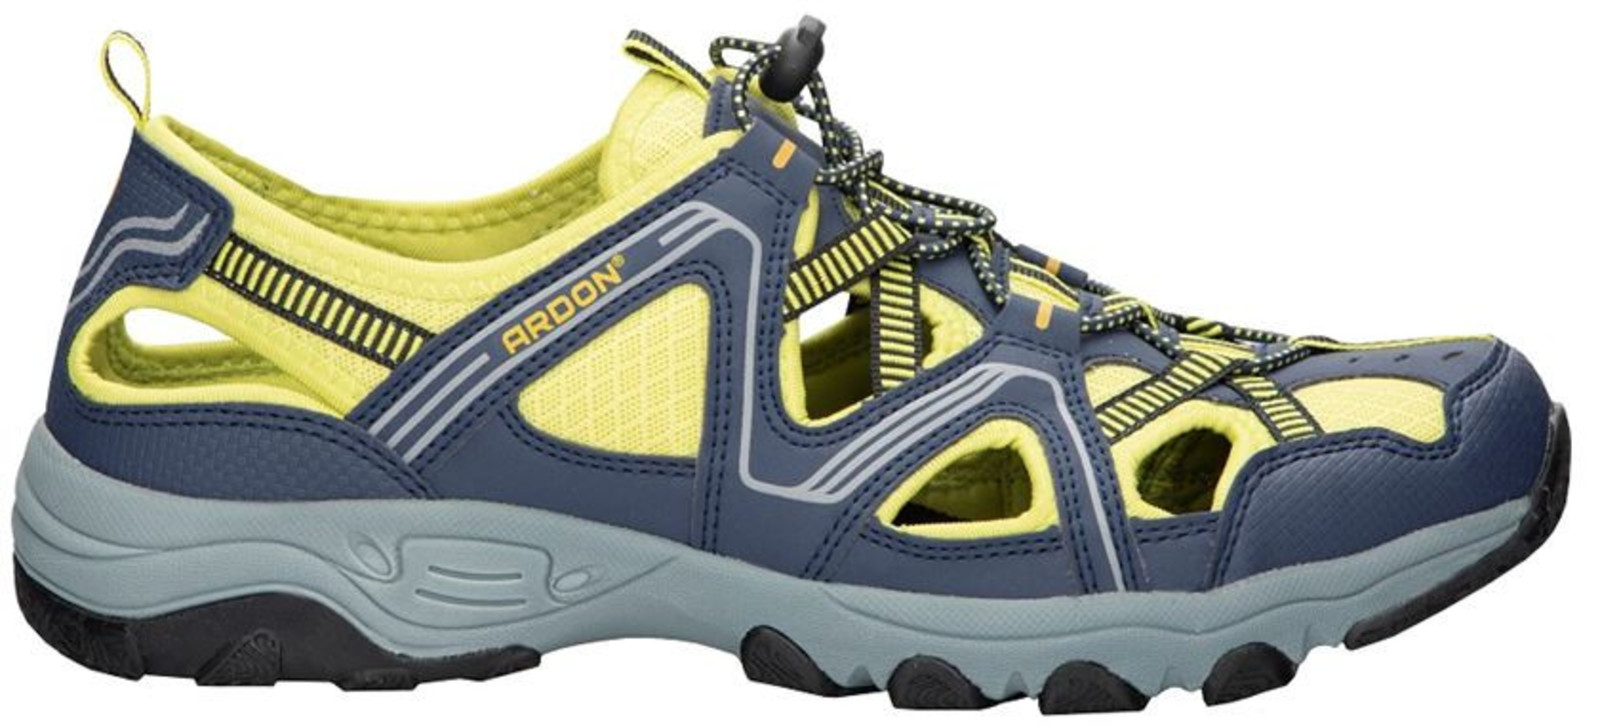 Trekové sandále Ardon Strand - veľkosť: 43, farba: modrá/žltá